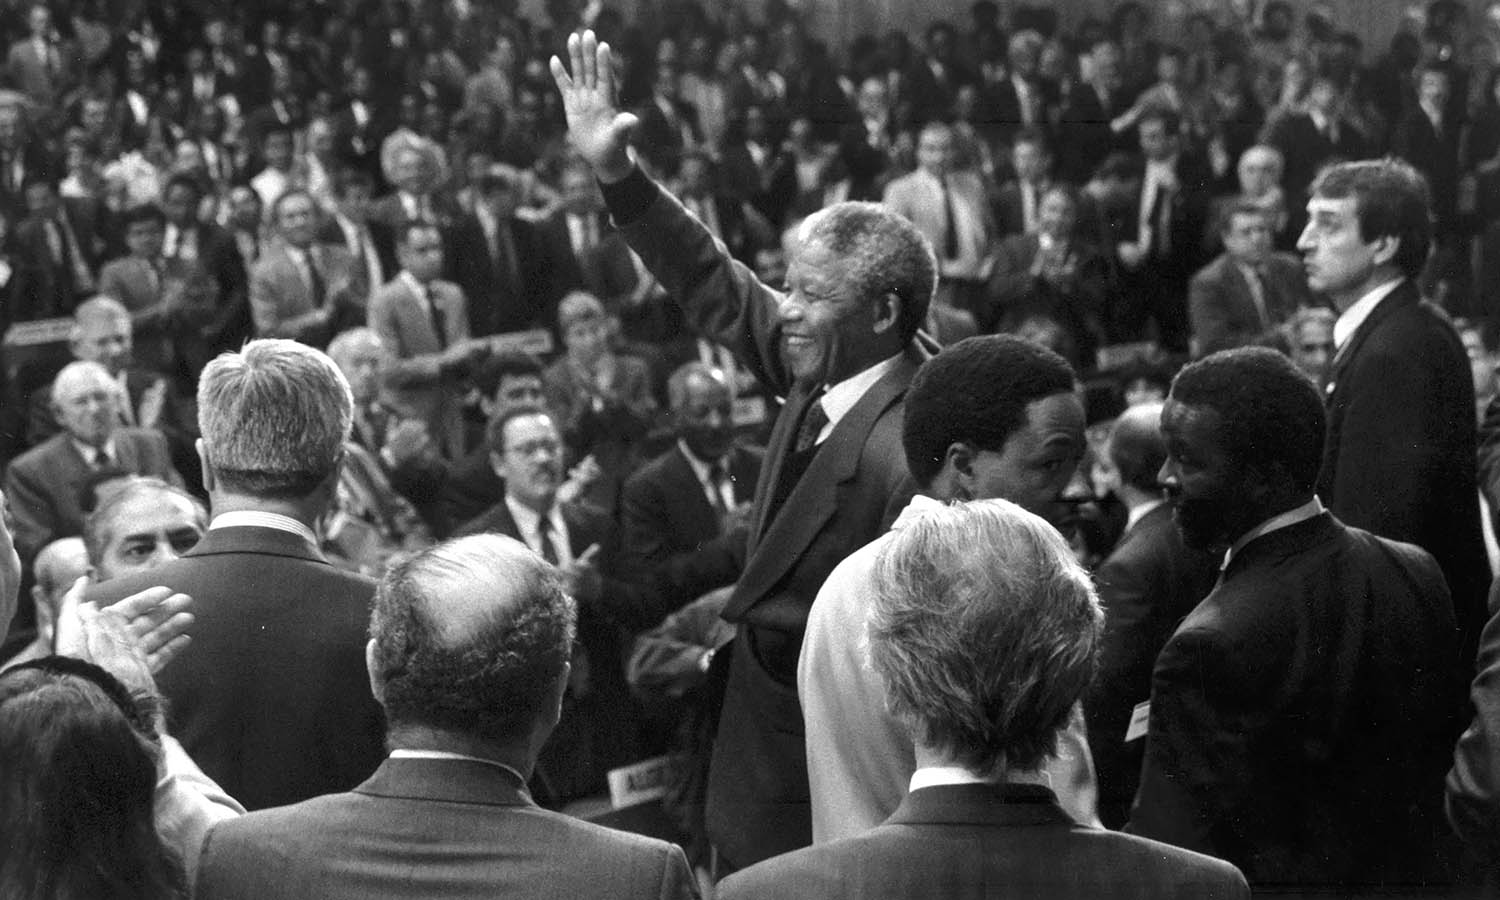 77a sessione della Conferenza Internazionale del lavoro. Omaggio di Nelson Mandela, all’epoca vice-presidente del Congresso nazionale africano, all’OIL per il suo impegno nel contrastare l’apartheid, Archivi storici OIL, 1990.